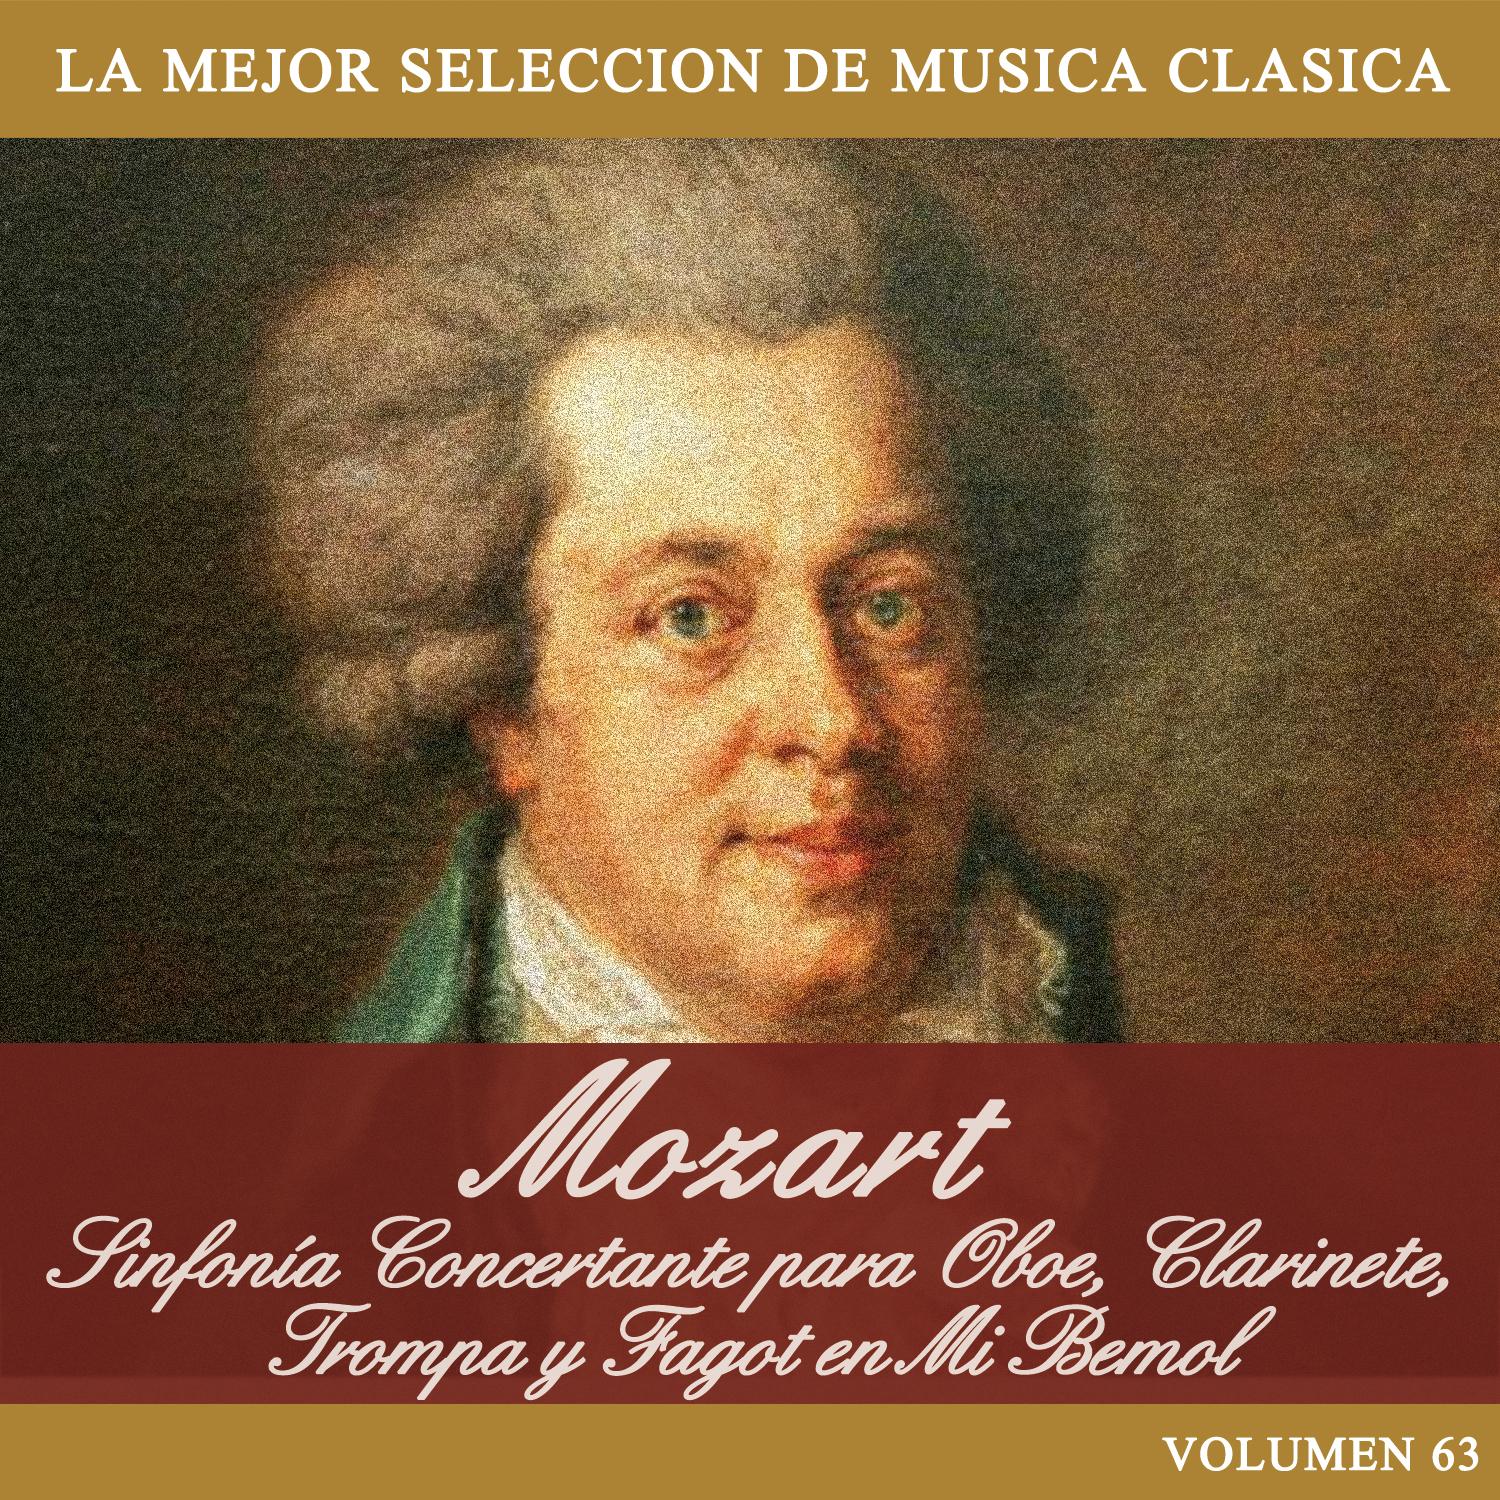 Mozart: Sinfoni a Concertante para Oboe, Clarinete, Trompa y Fagot en Mi Bemol